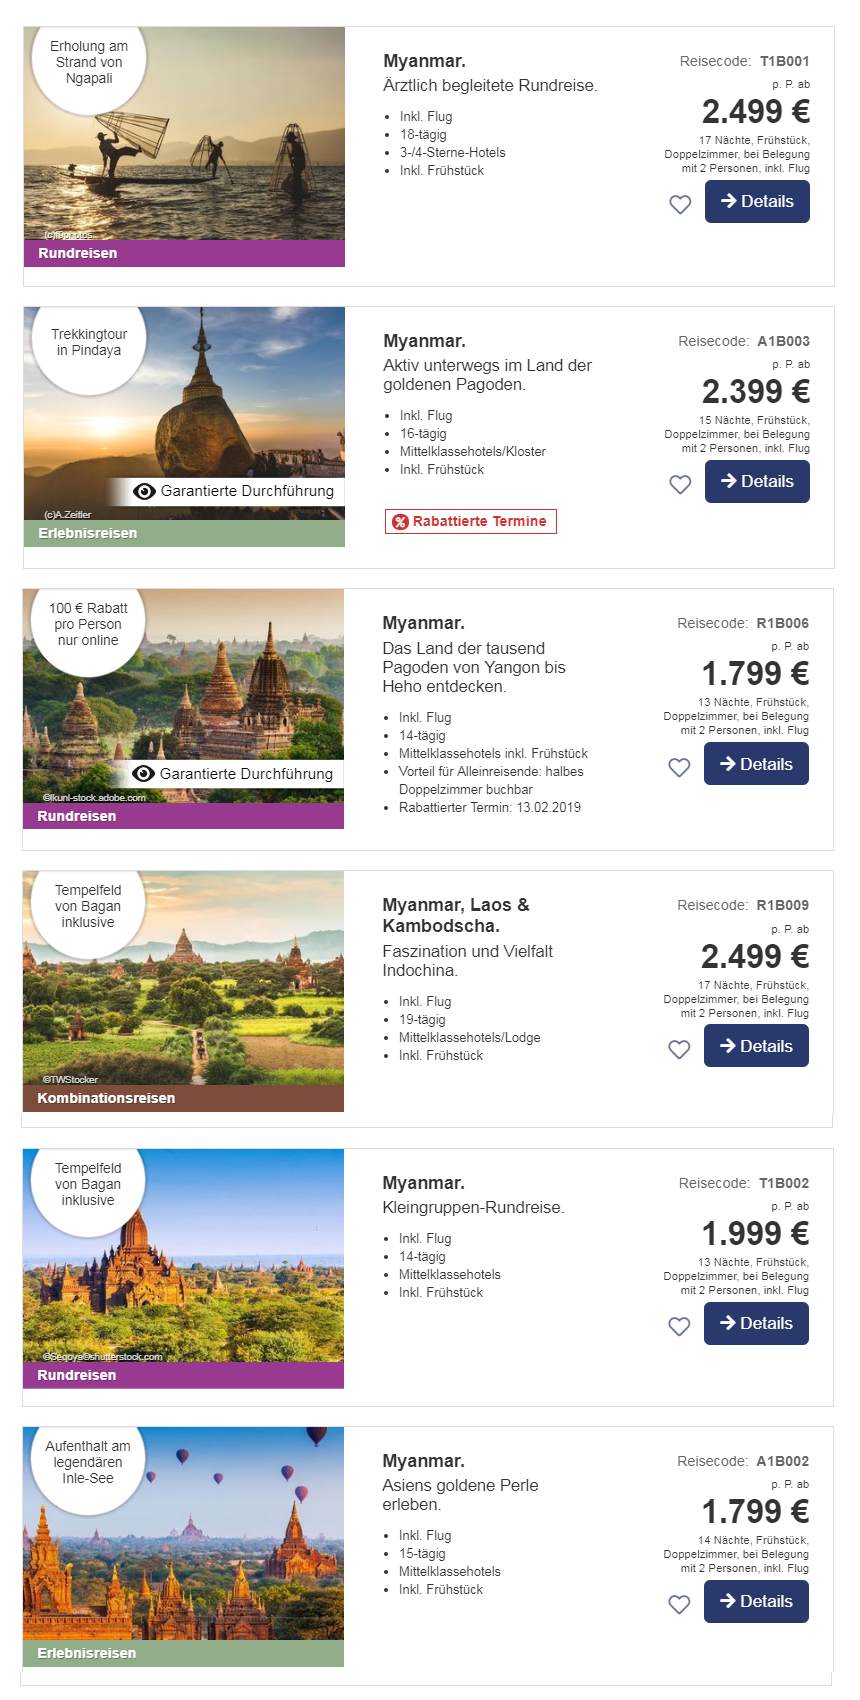 Liste Myanmar Reiseangebote mit Badeverlängerung Saison 2019/2020